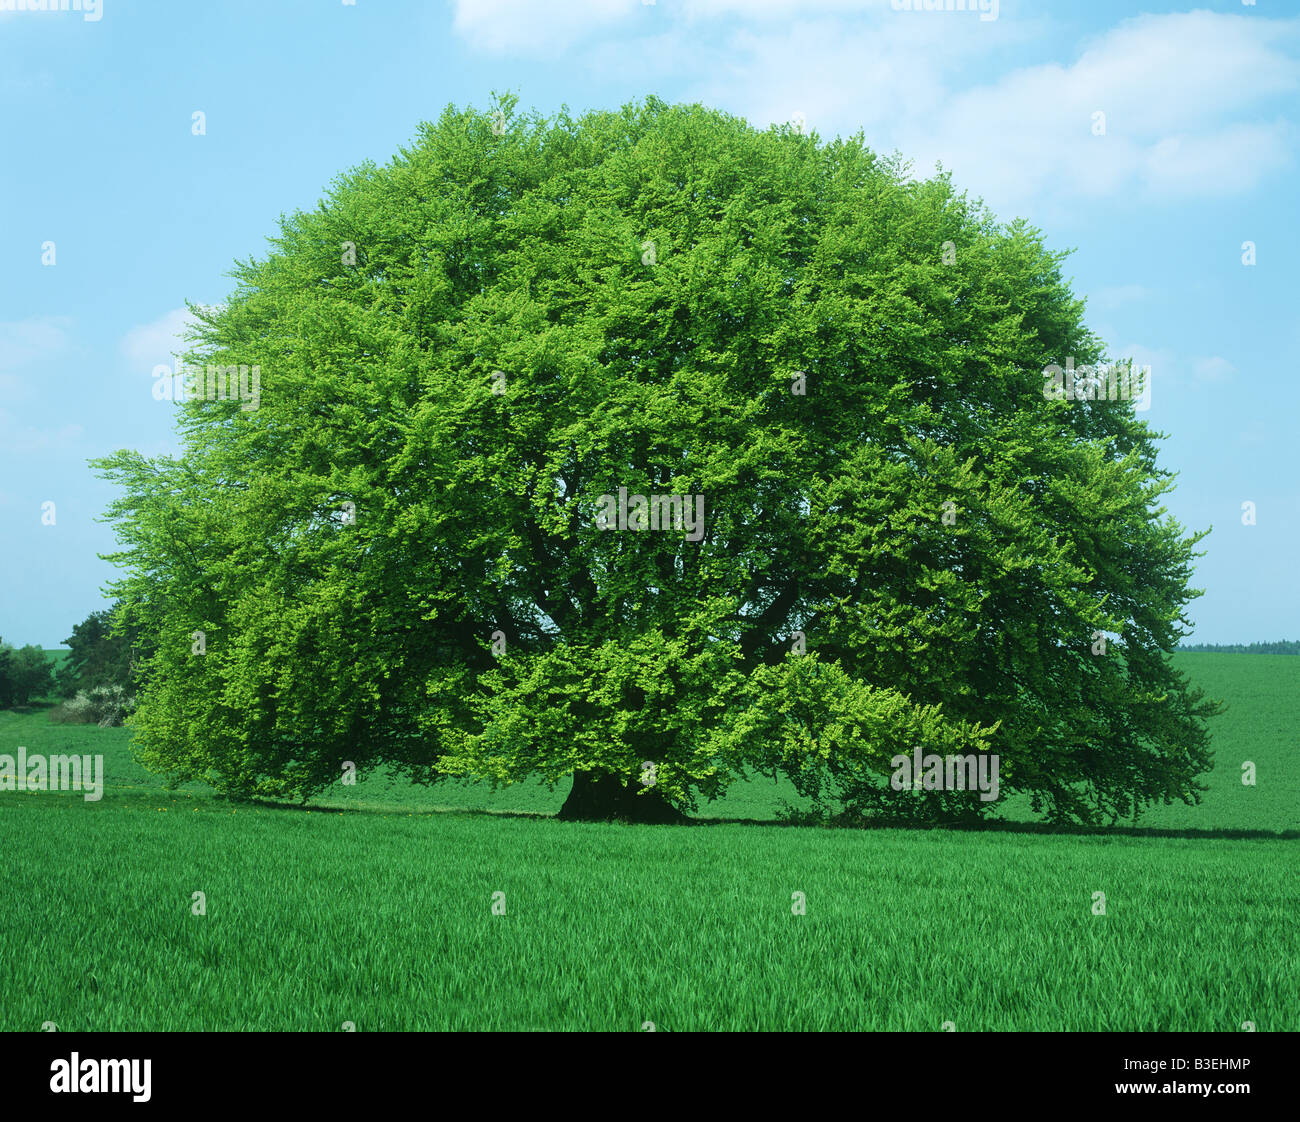 Tree in field Stock Photo